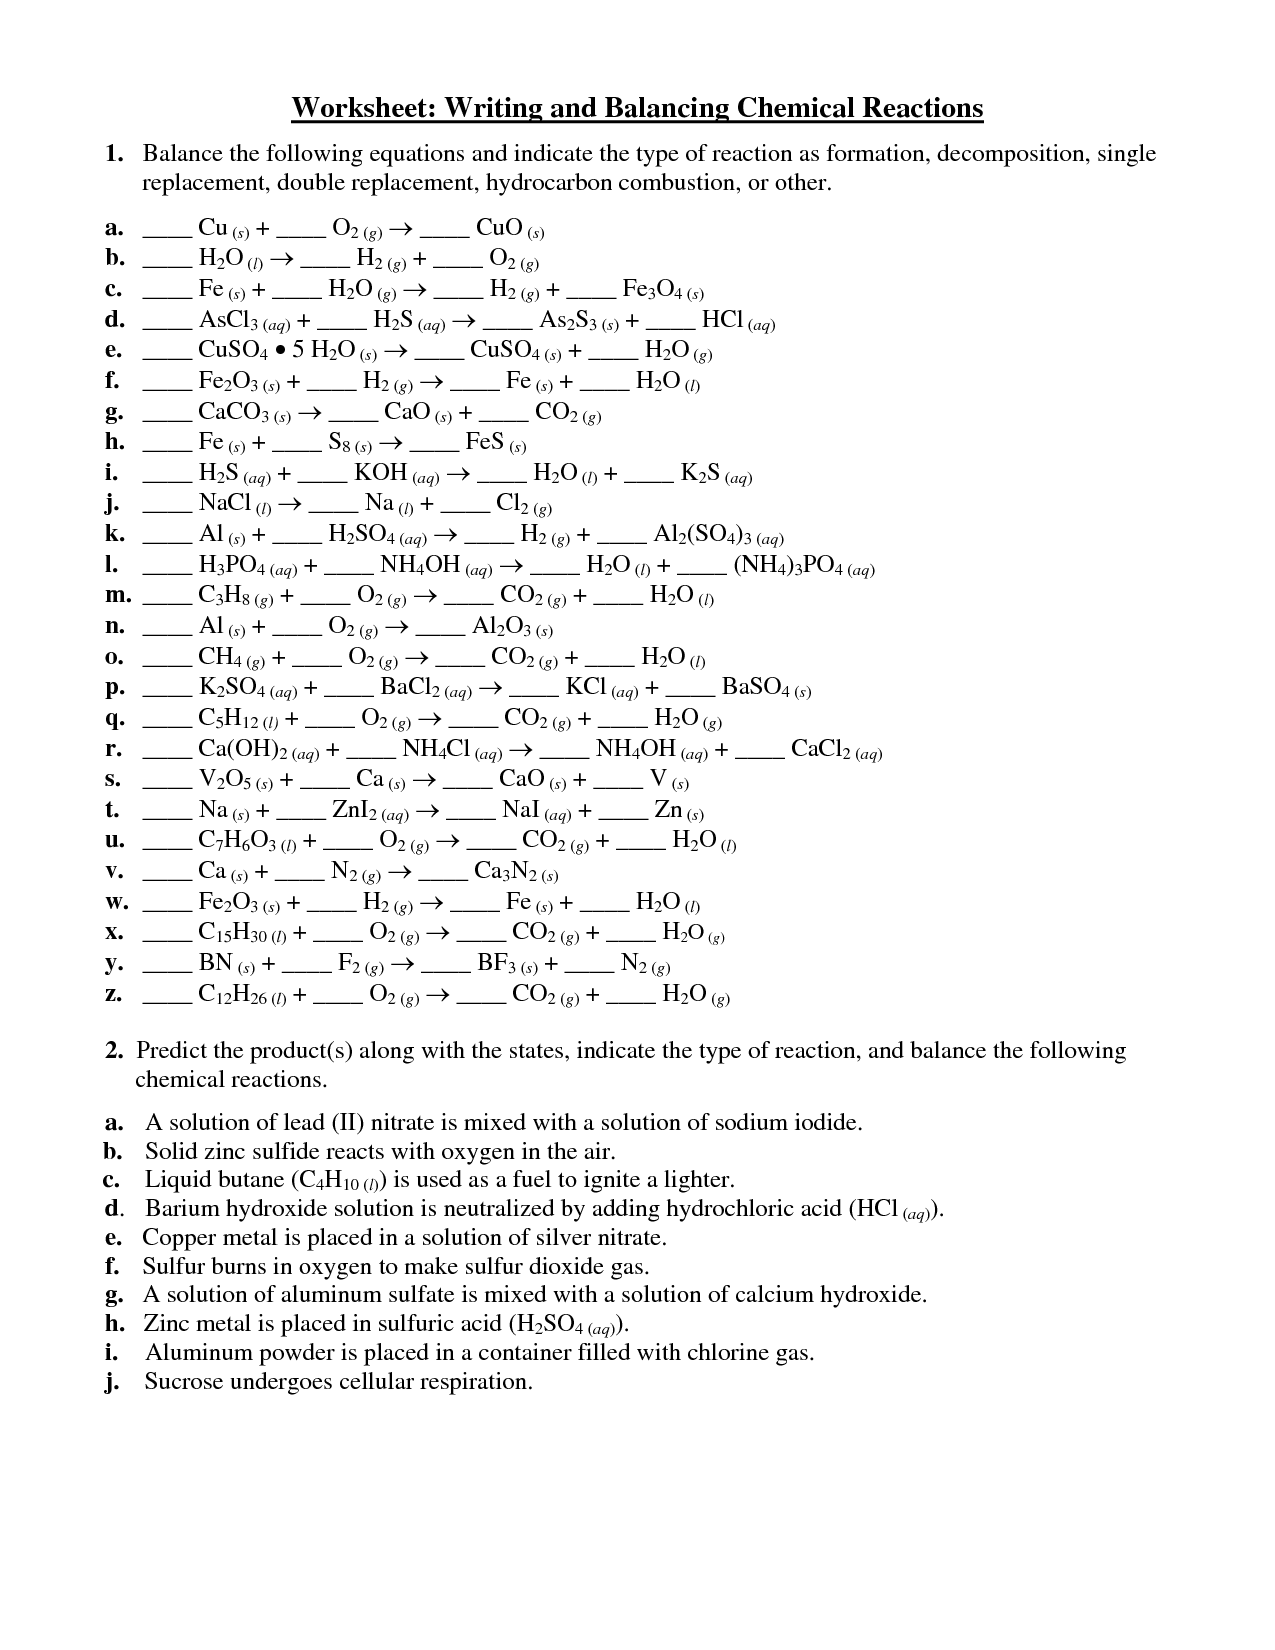 Balancing Equations Worksheet Answer Key 1 15